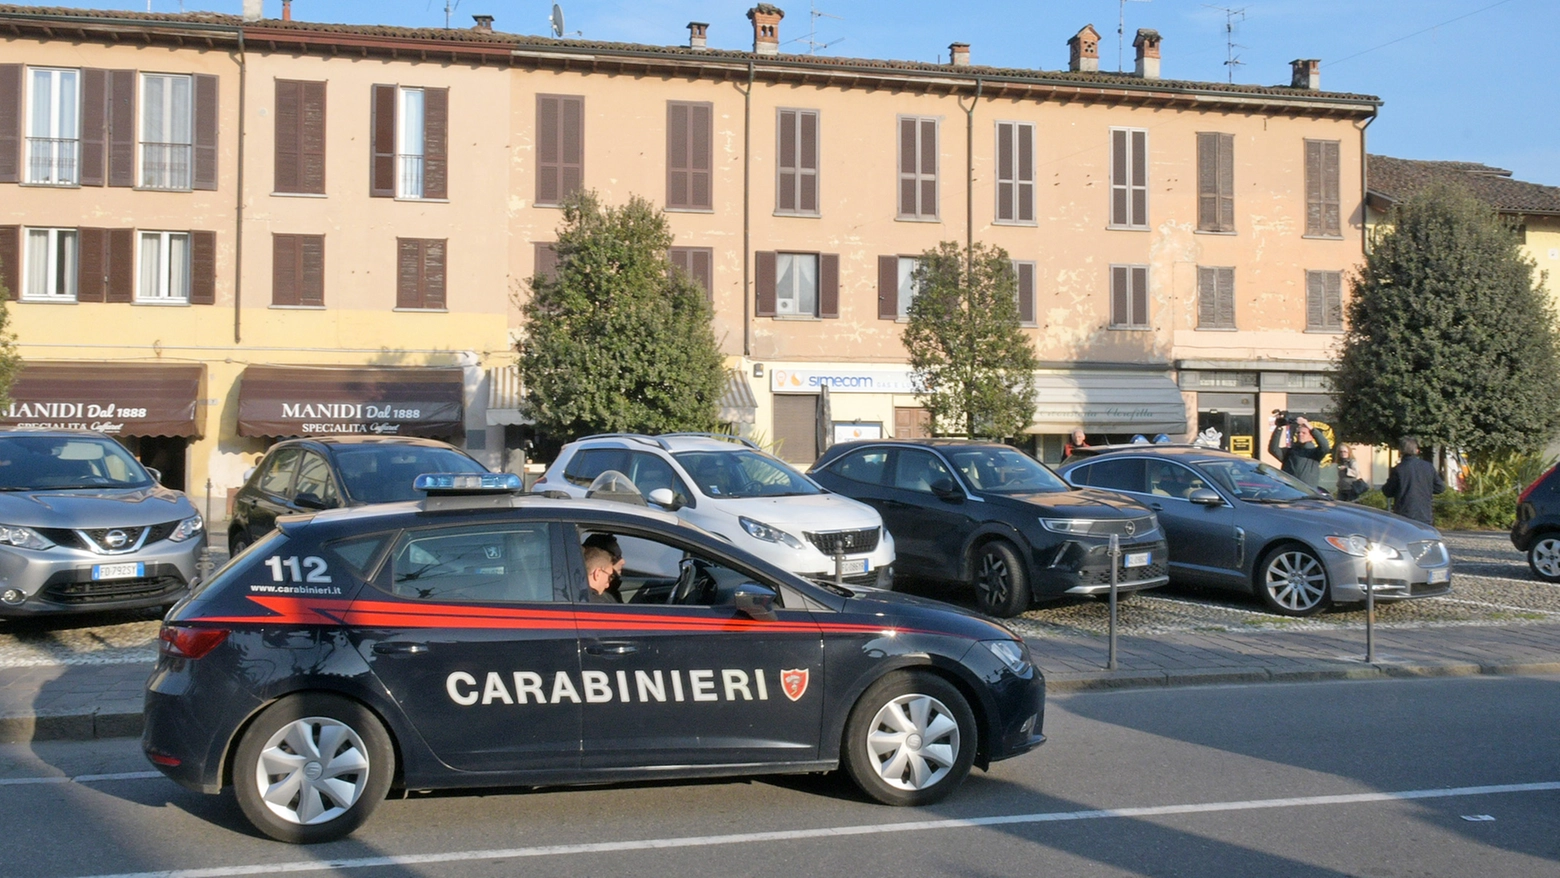 Carabinieri sul luogo dell'accoltellamento